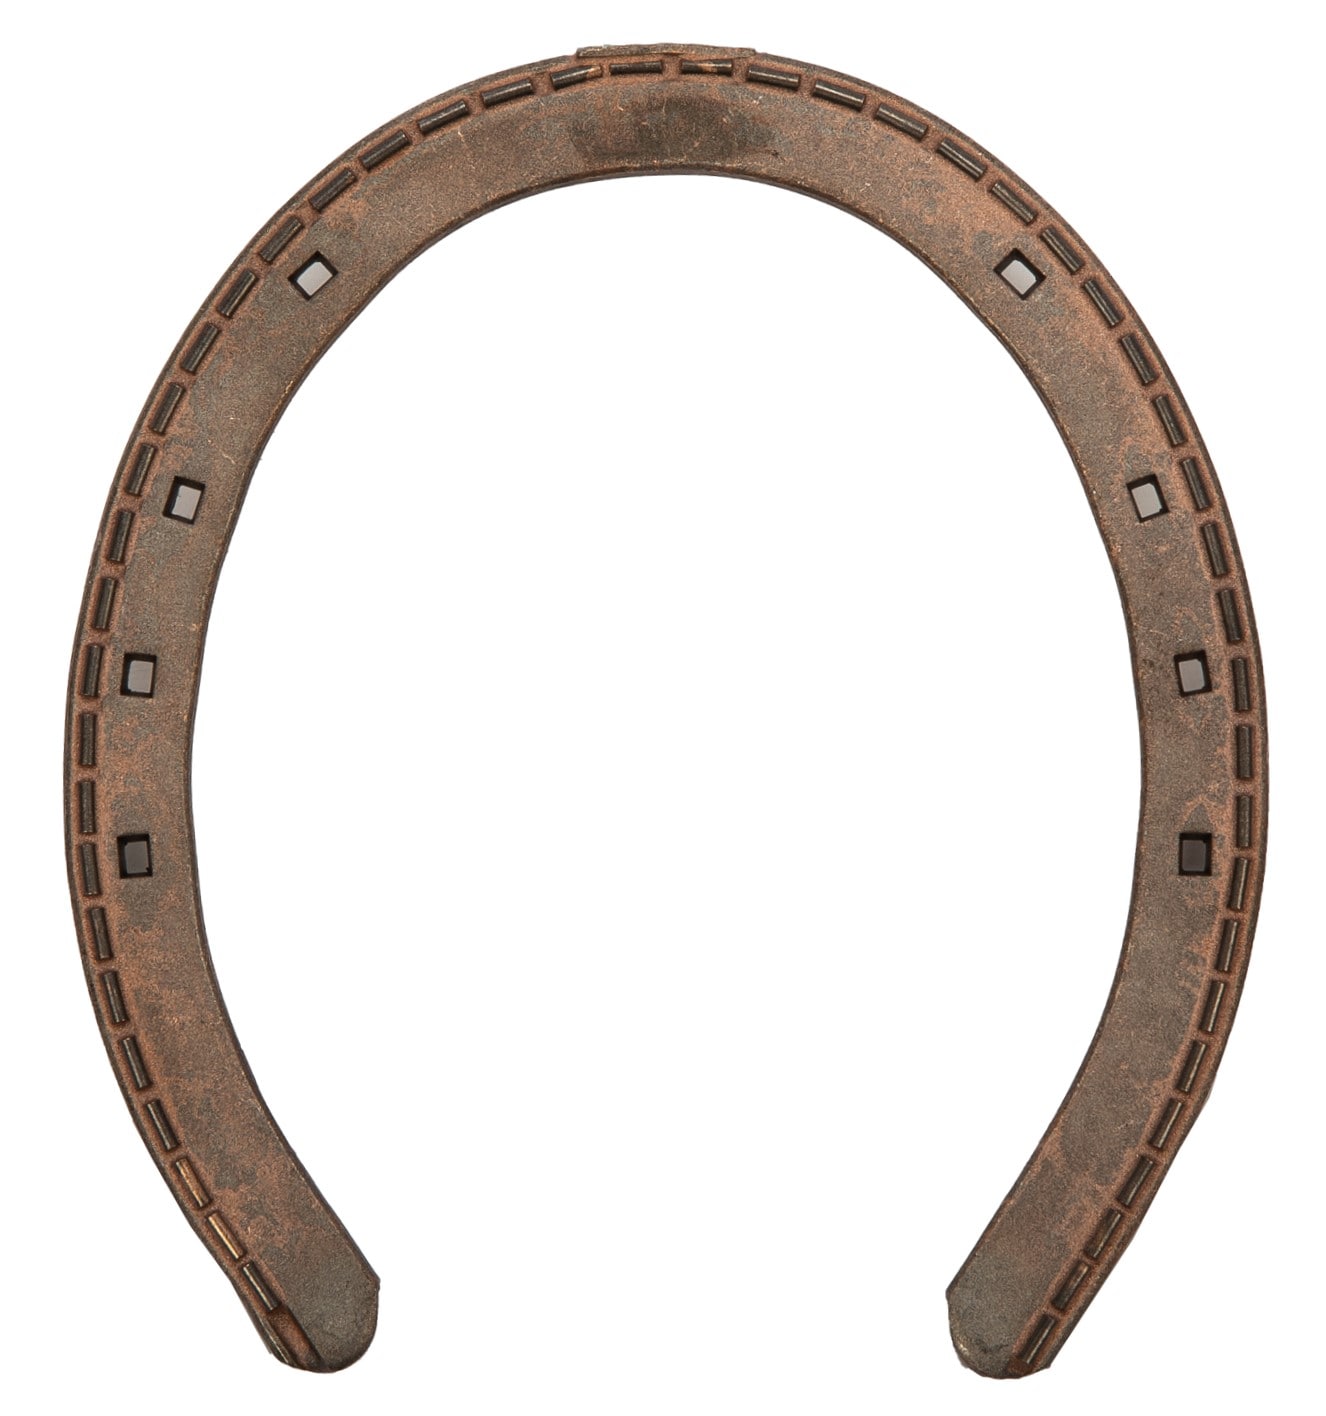 Hard metal horseshoe (goldshoe) 15x5